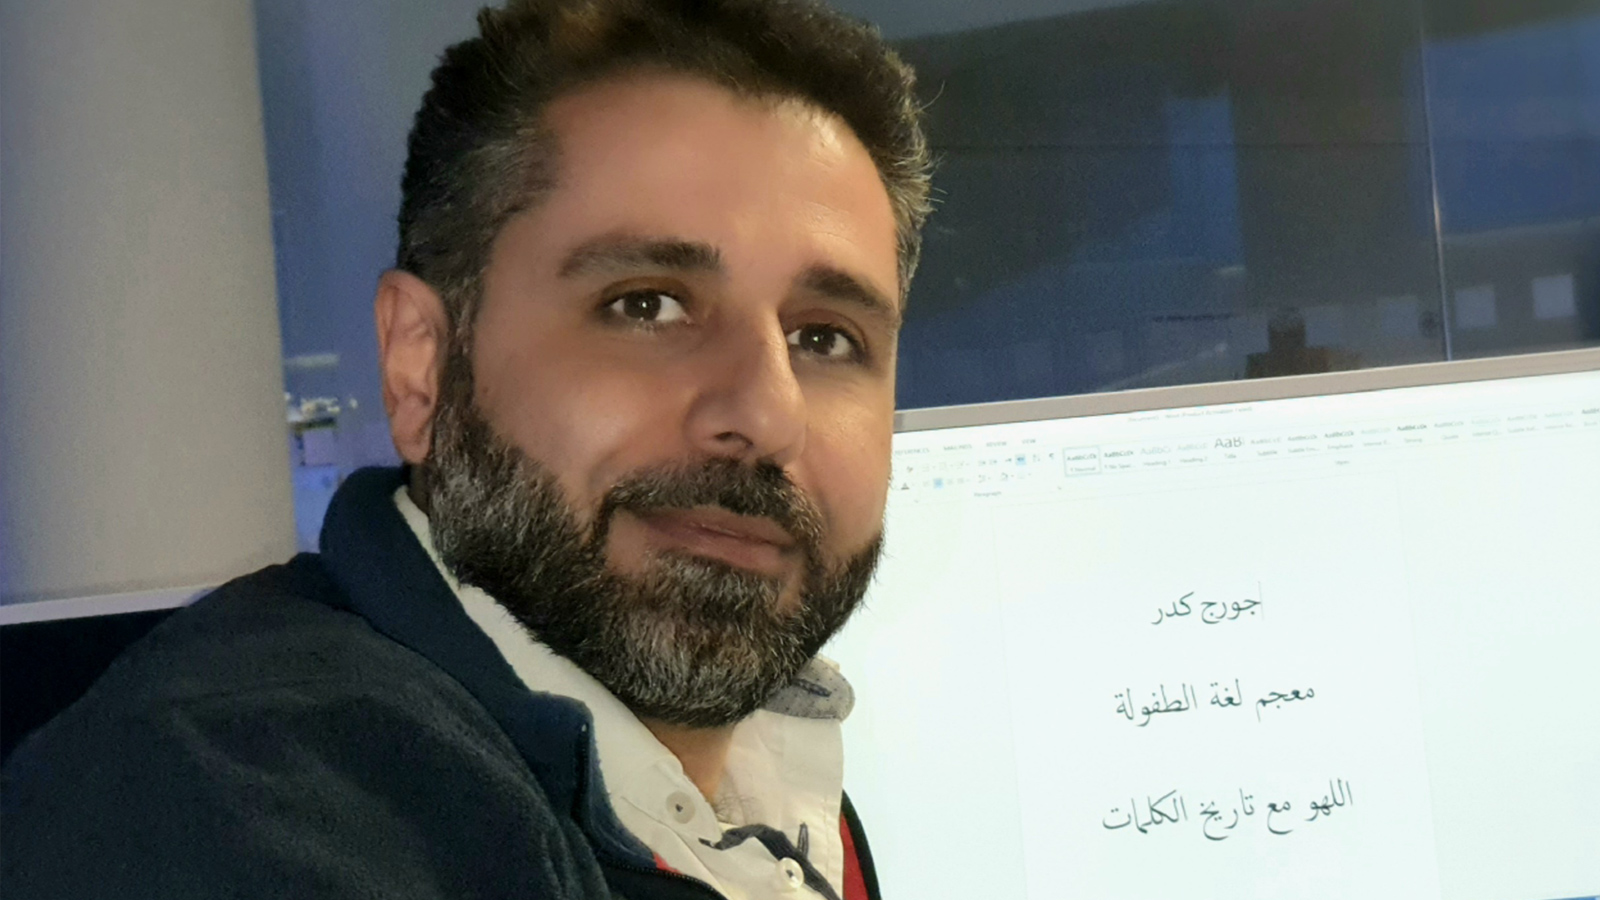 وجد الكاتب السوري جورج كدر في الحجر الصحي فرصة لإنجاز كتابه 